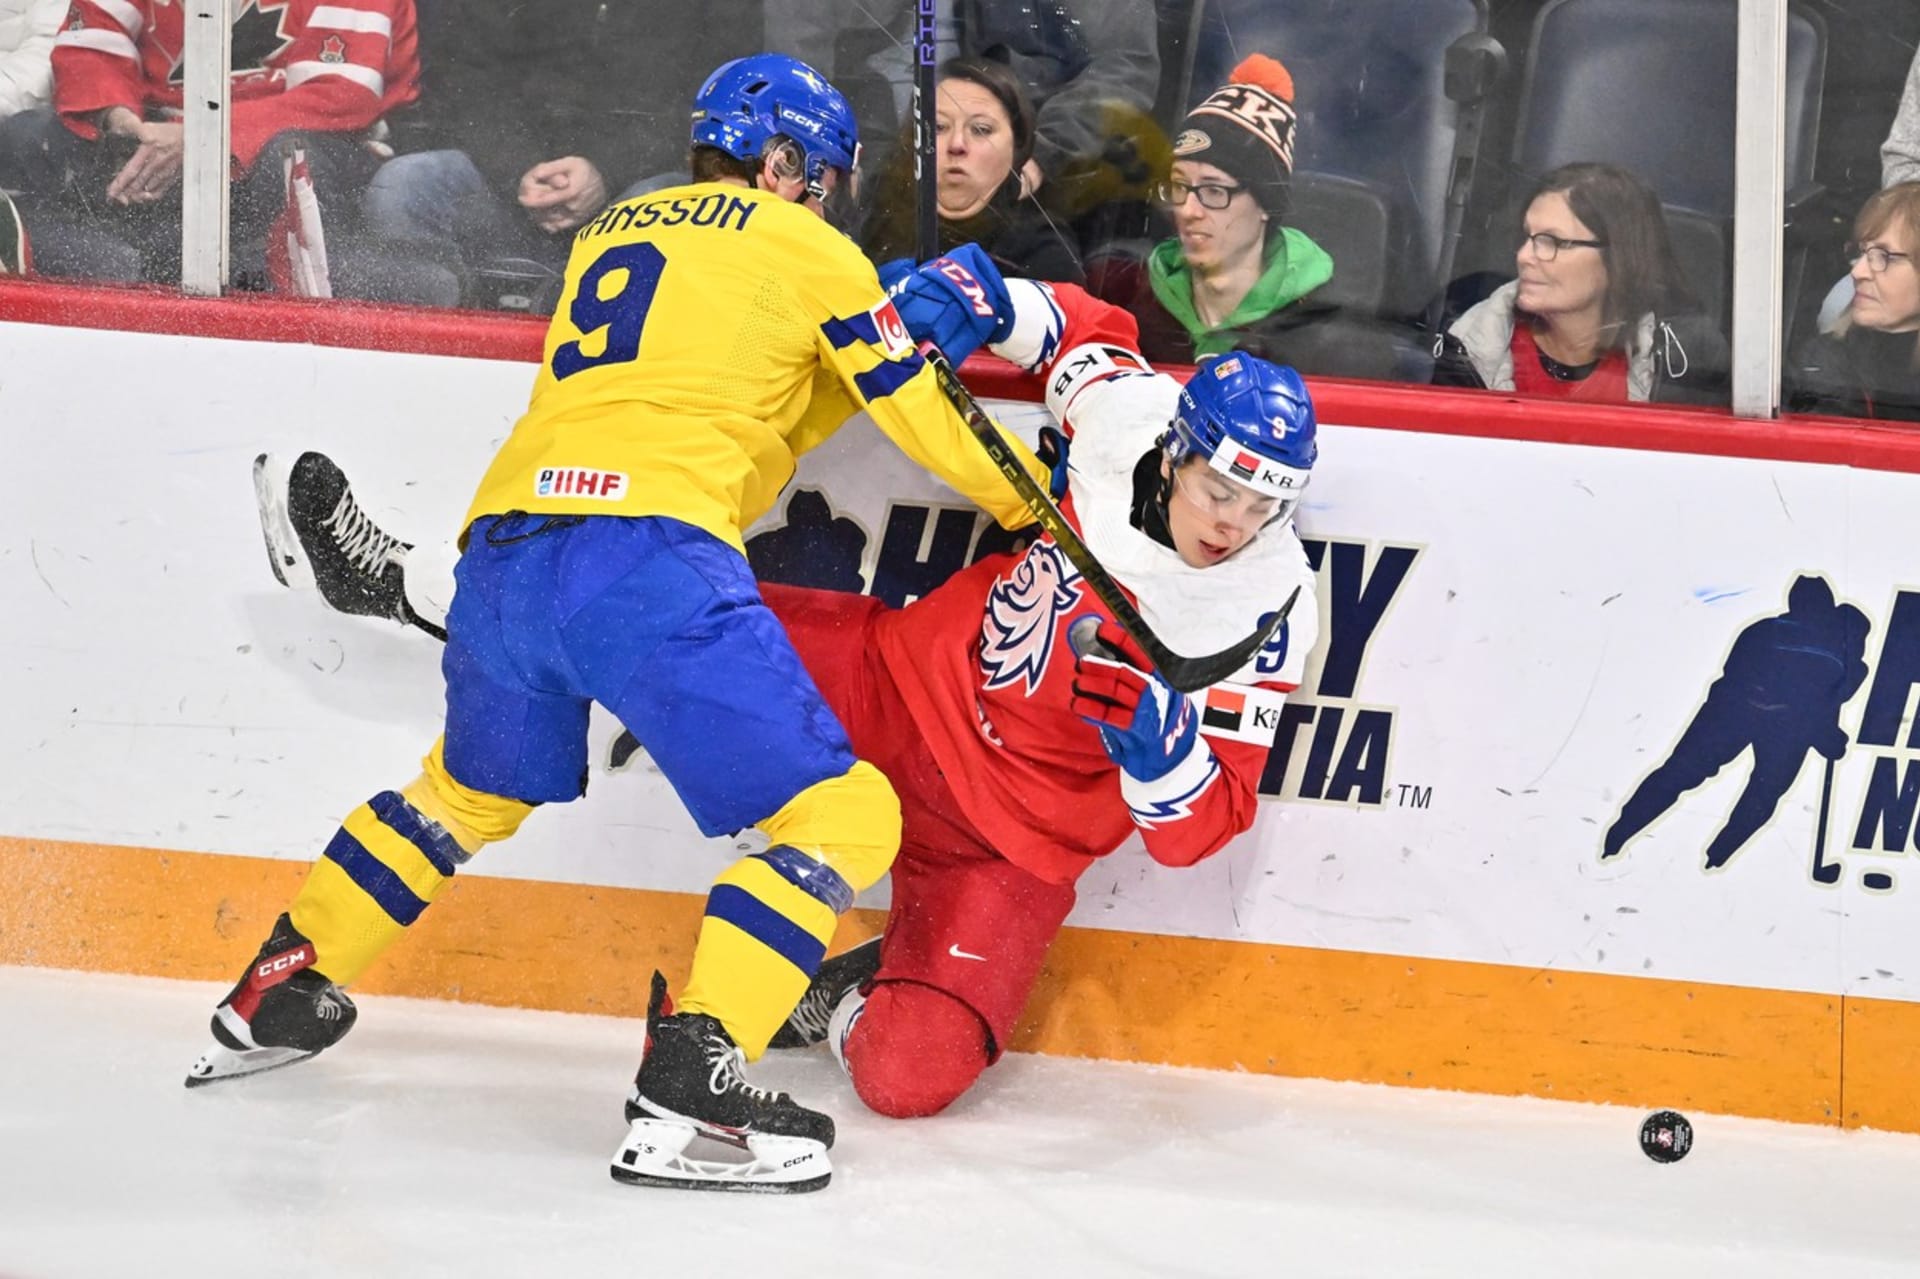 Česká reprezentace dokázala Švédy porazit v prodloužení.